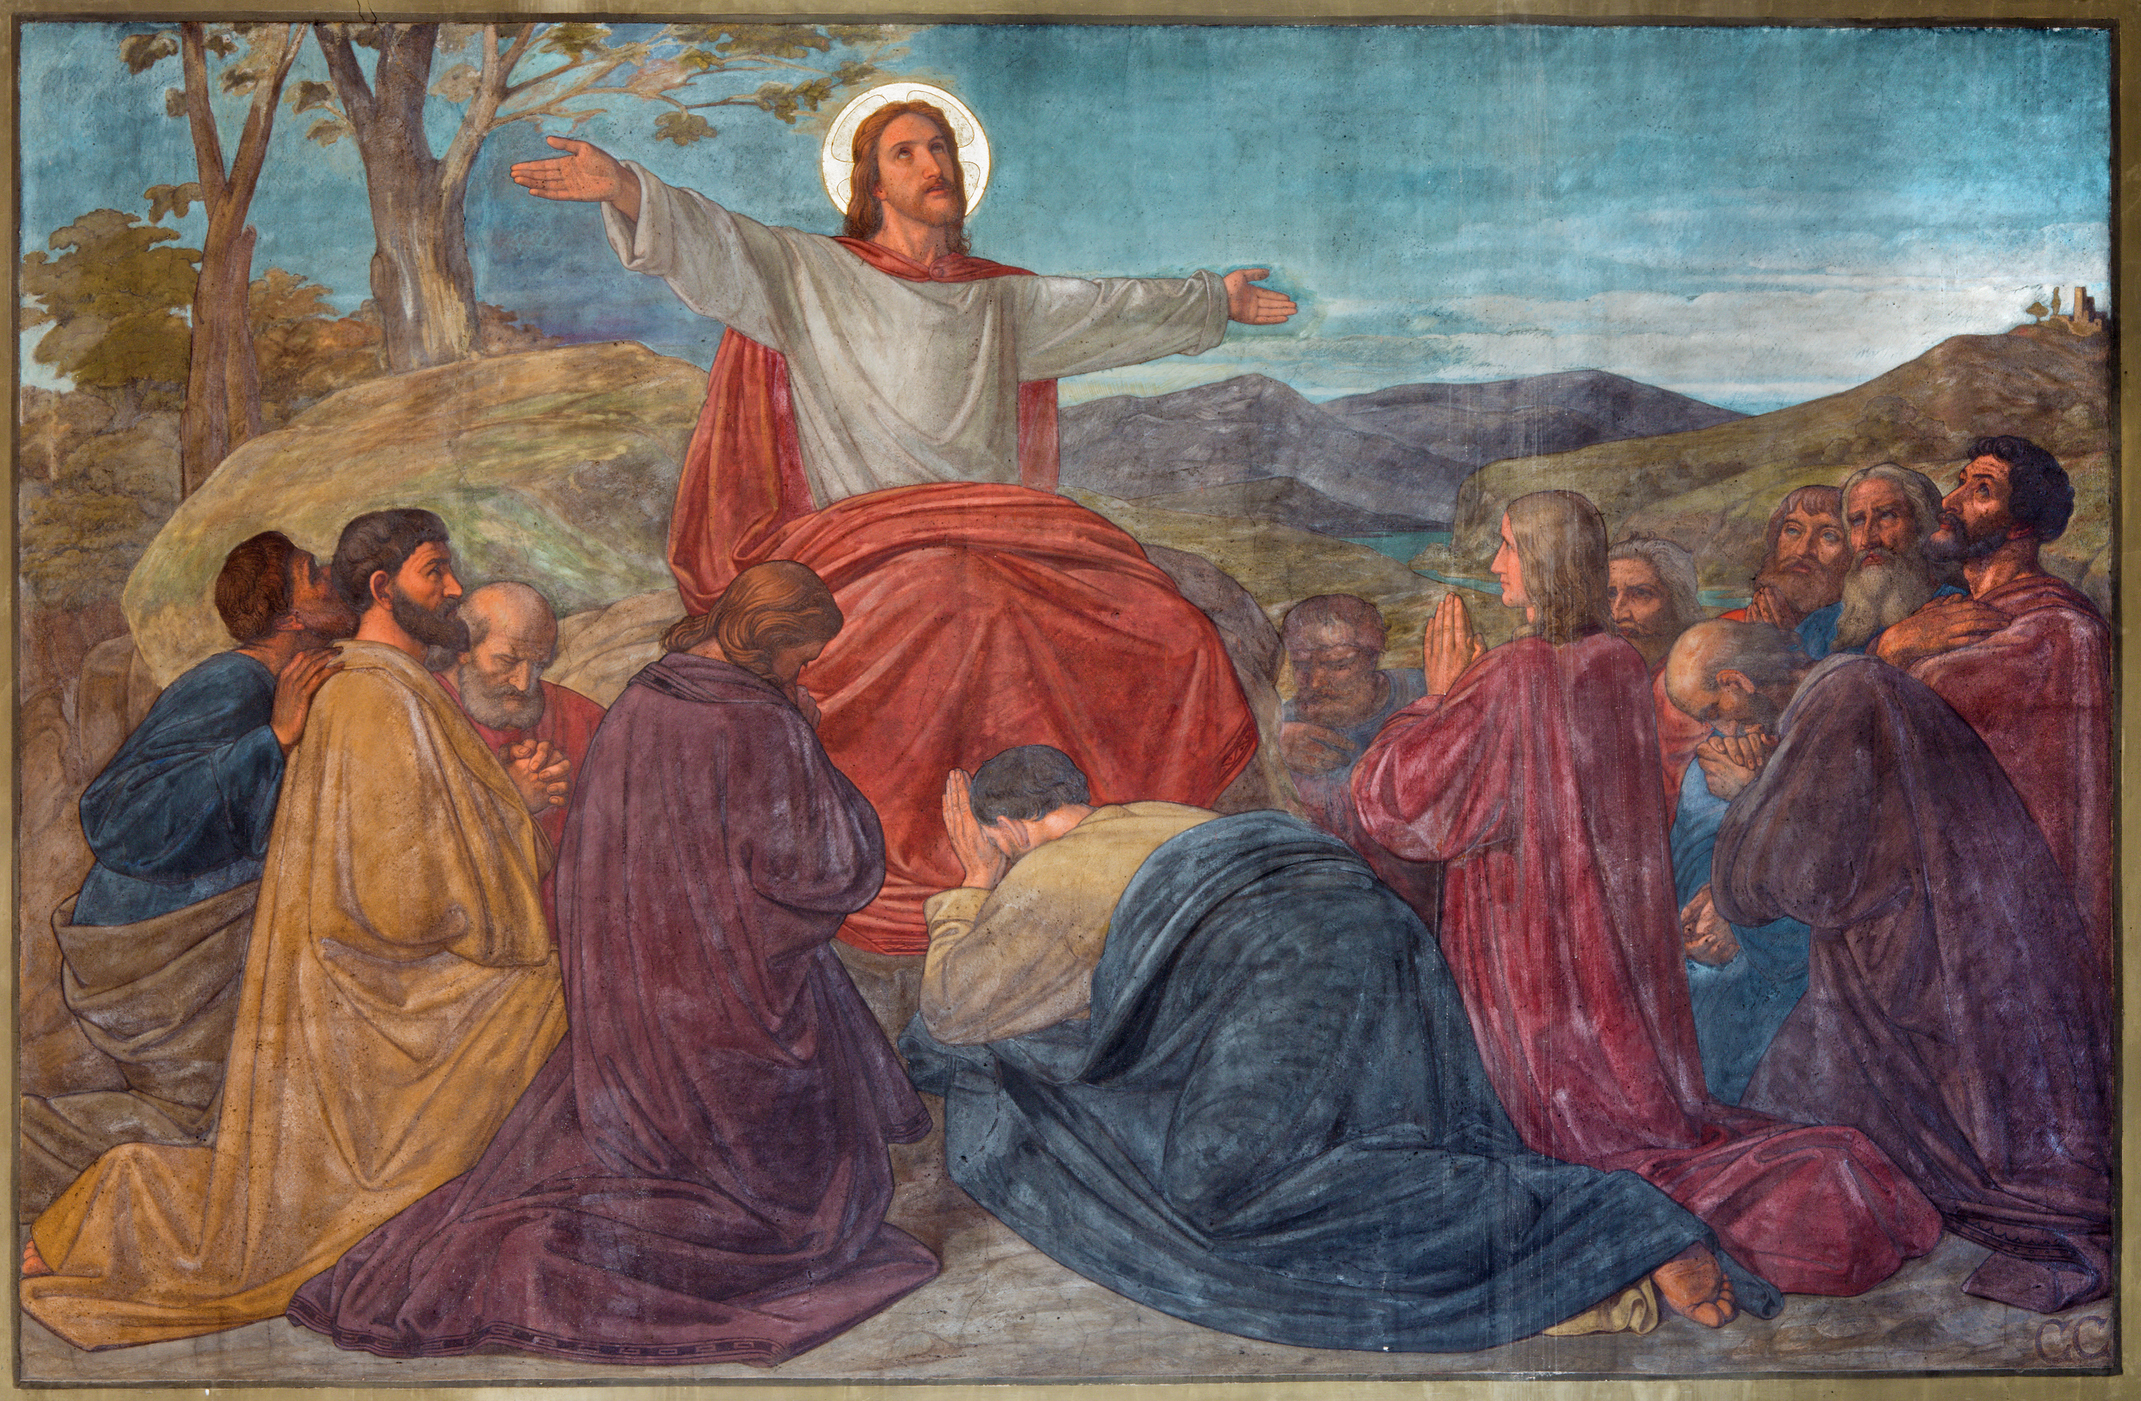 لوحة تصور المسيح مع تلاميذه